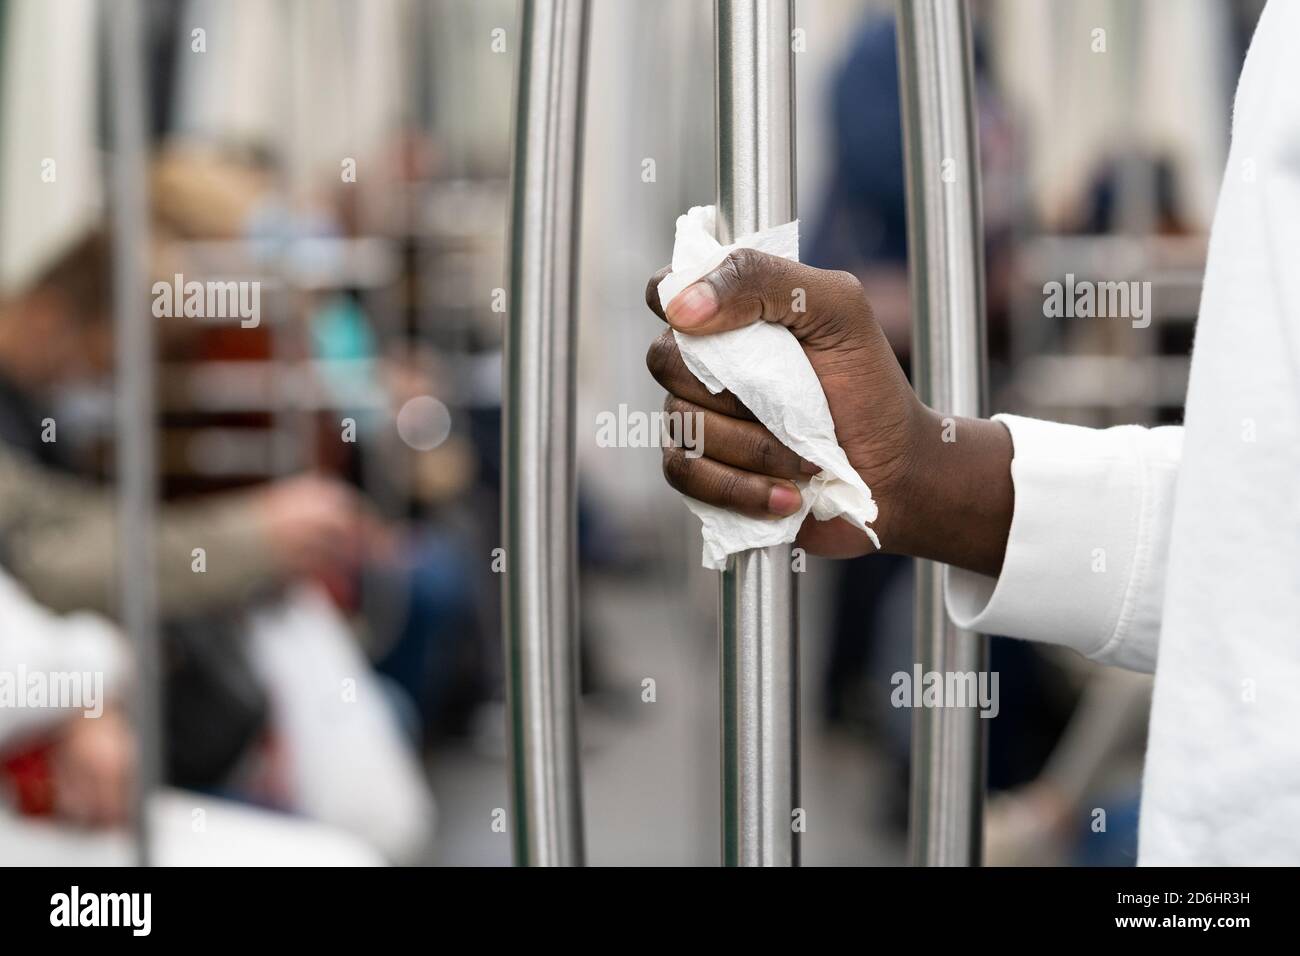 Nahaufnahme von Black man Hand hält einen Handlauf in öffentlichen Verkehrsmitteln oder U-Bahn durch eine Serviette, um sich vor Kontakt mit Viren zu schützen, Keime durin Stockfoto